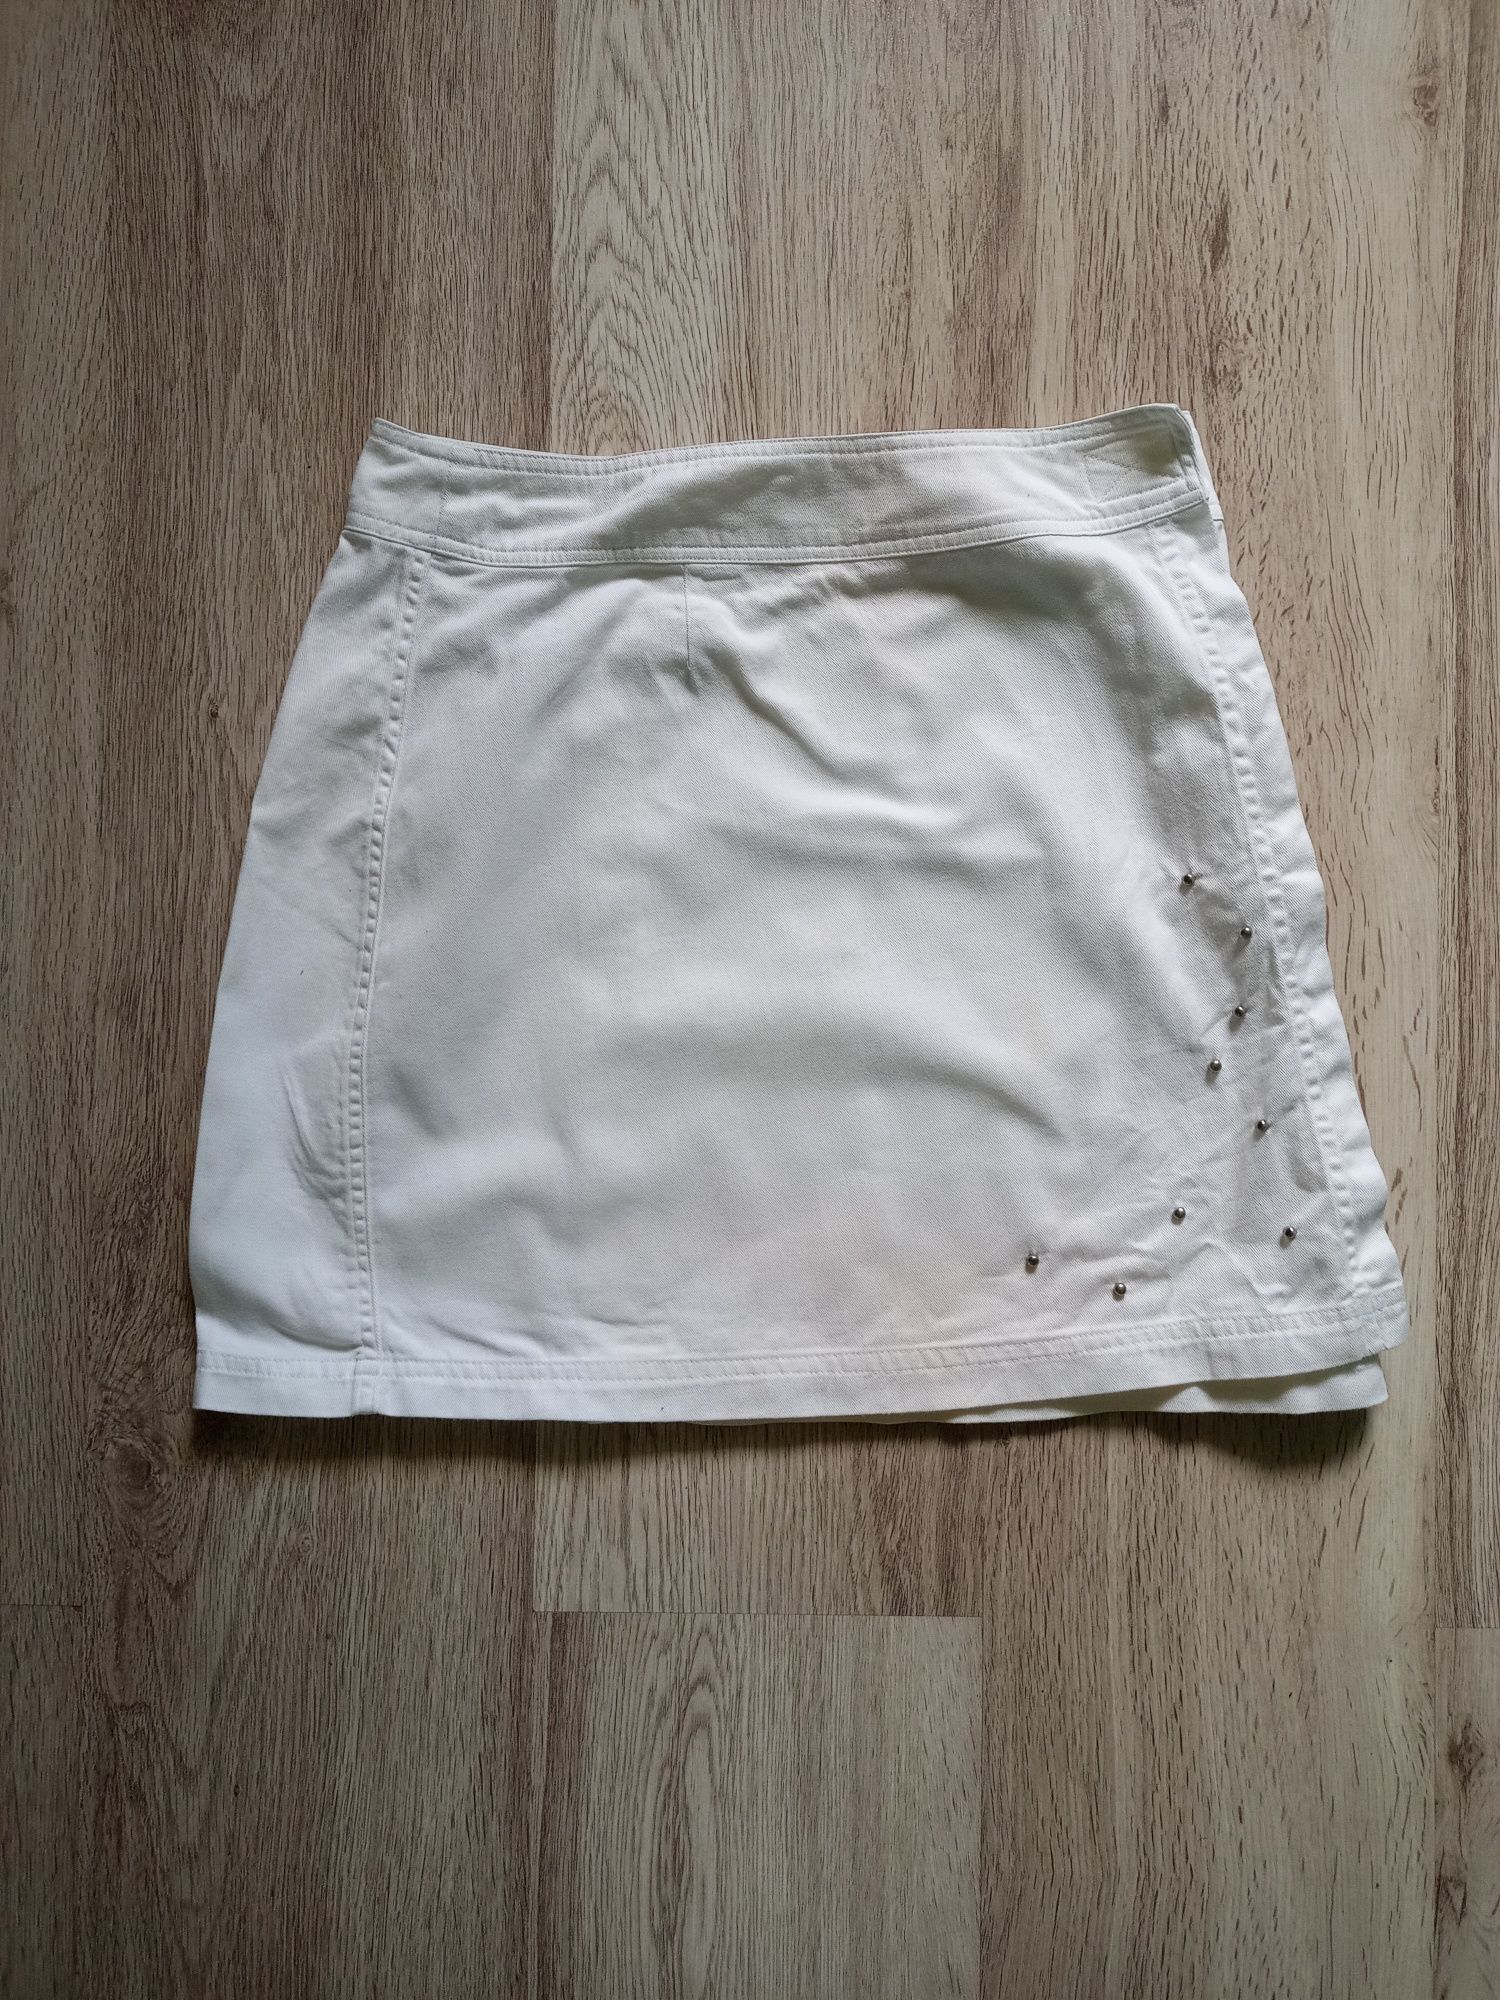 Biała spódniczka mini/krótka. Rozmiar M